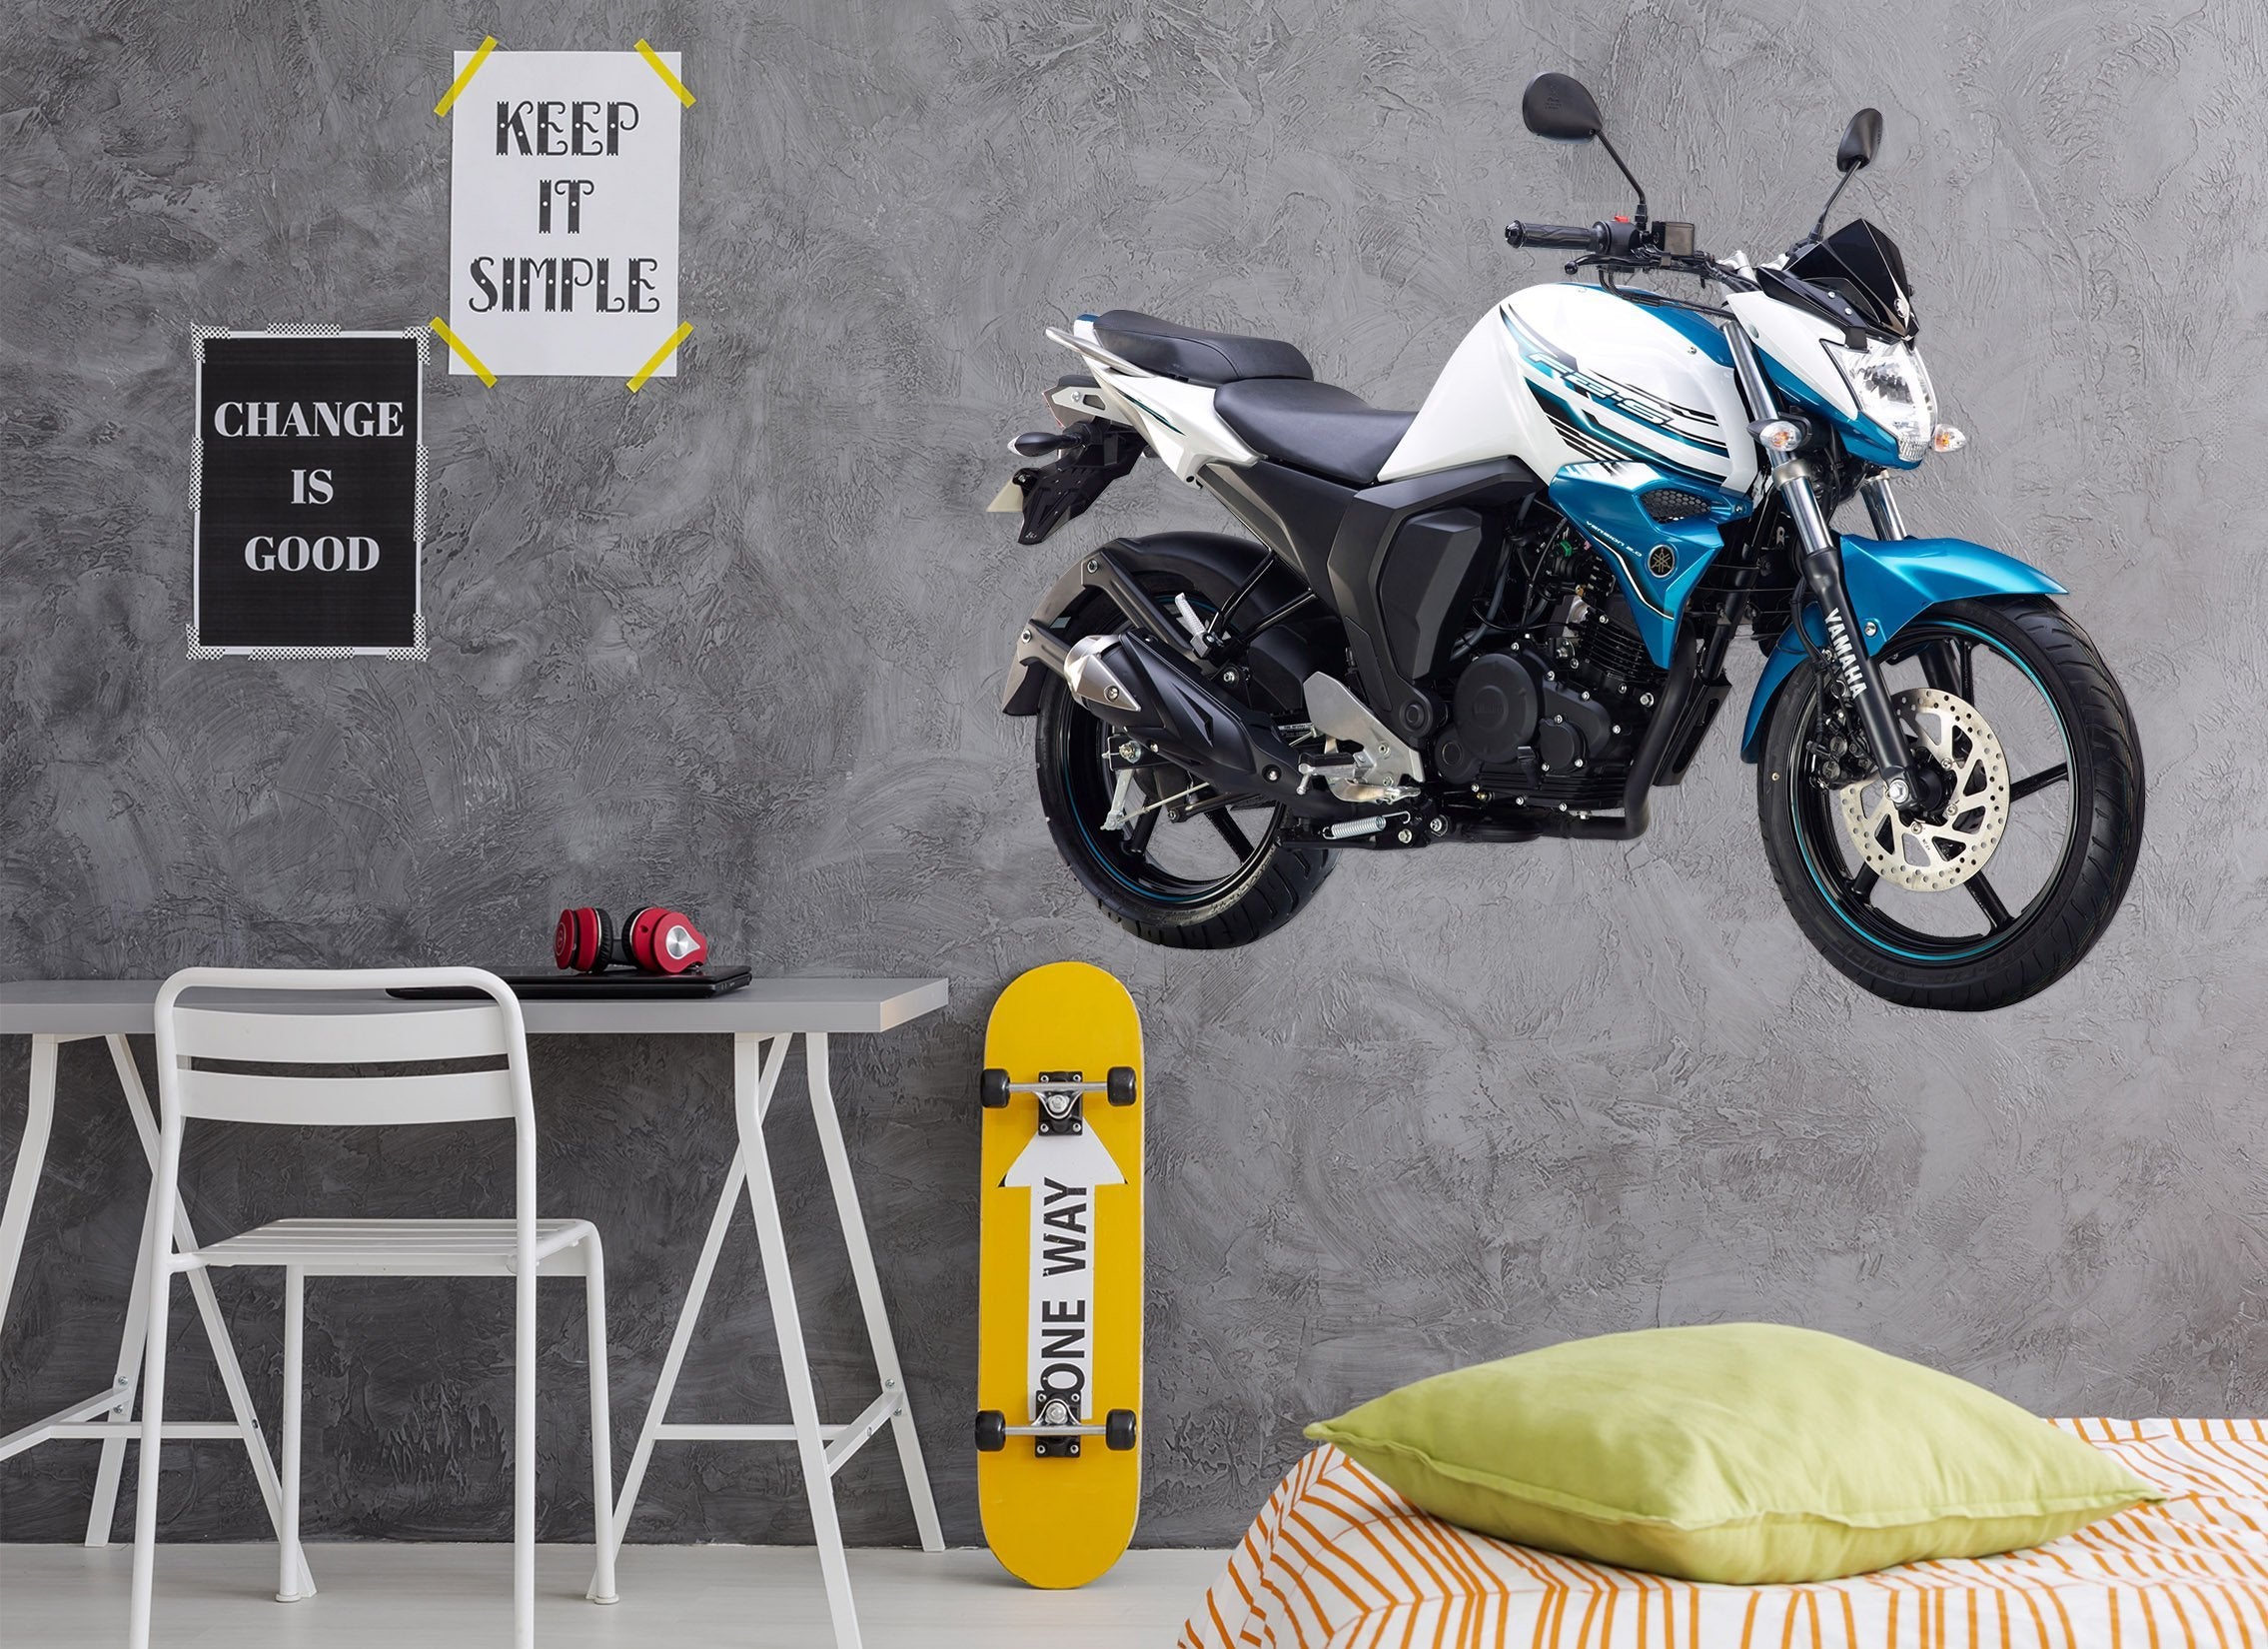 3D GW Motorcycle 0041 Vehicles Wallpaper AJ Wallpaper 